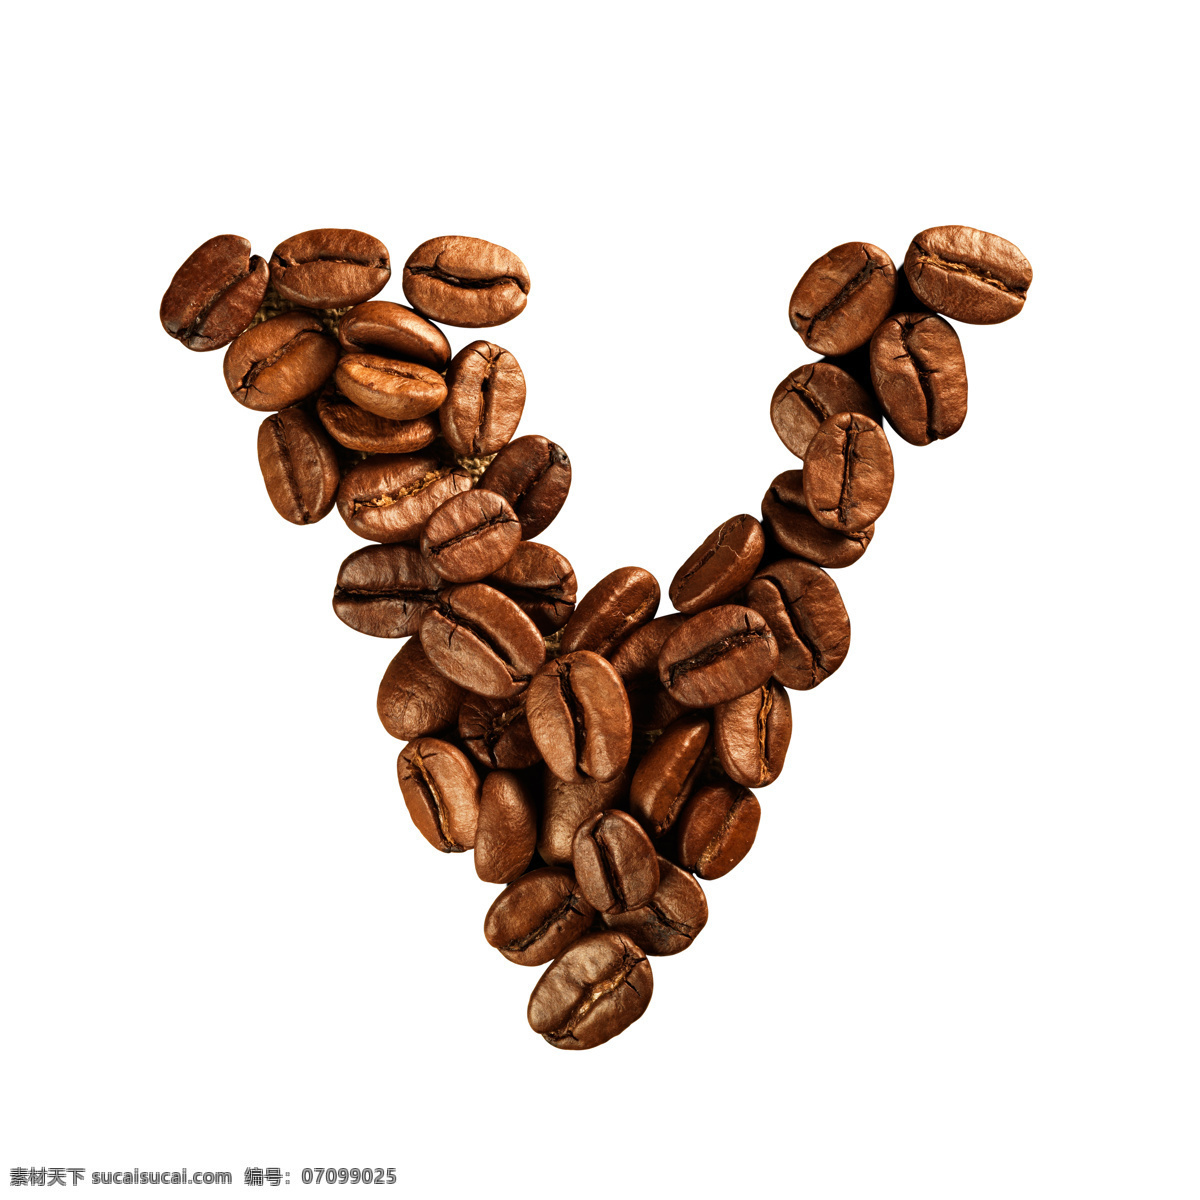 咖啡豆 组成 字母 v 咖啡 文字 艺术字体 咖啡图片 餐饮美食